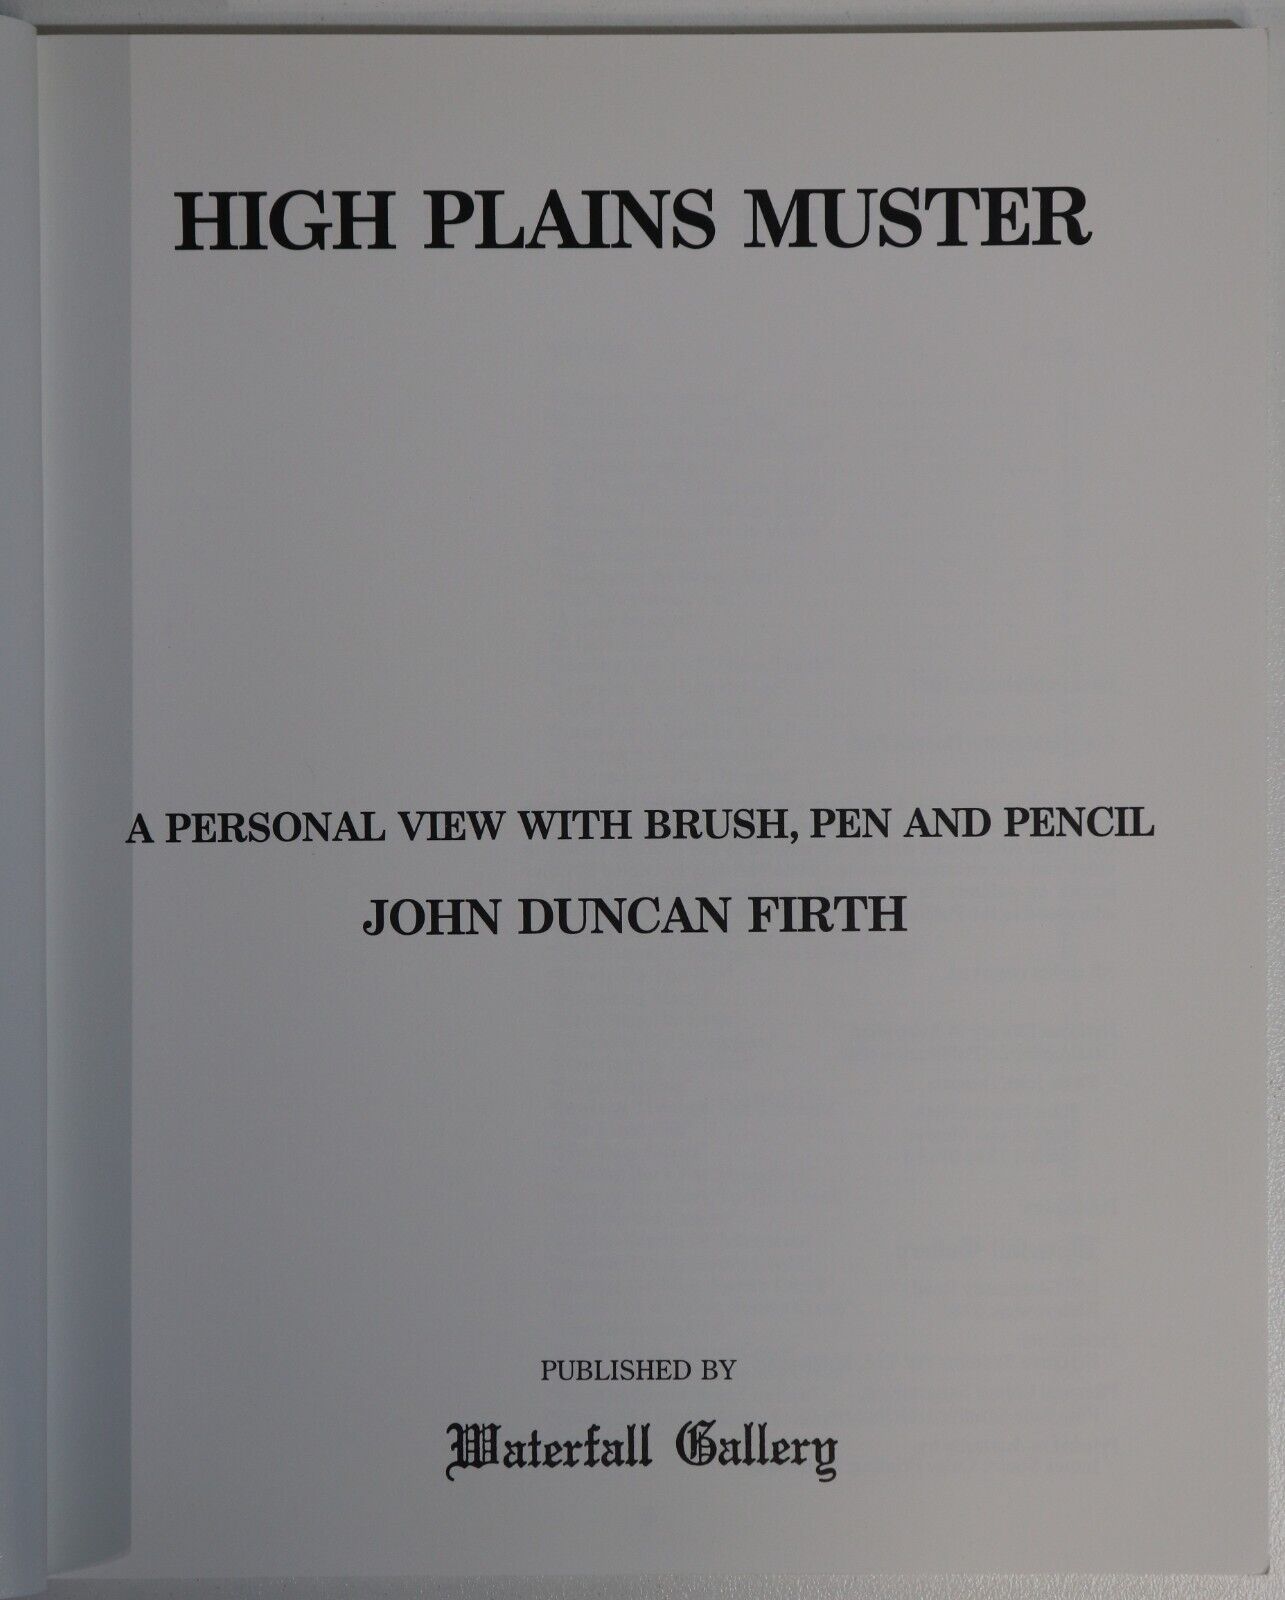 High Plains Muster by John Duncan Firth - 1987 - Australian Art Book - 0